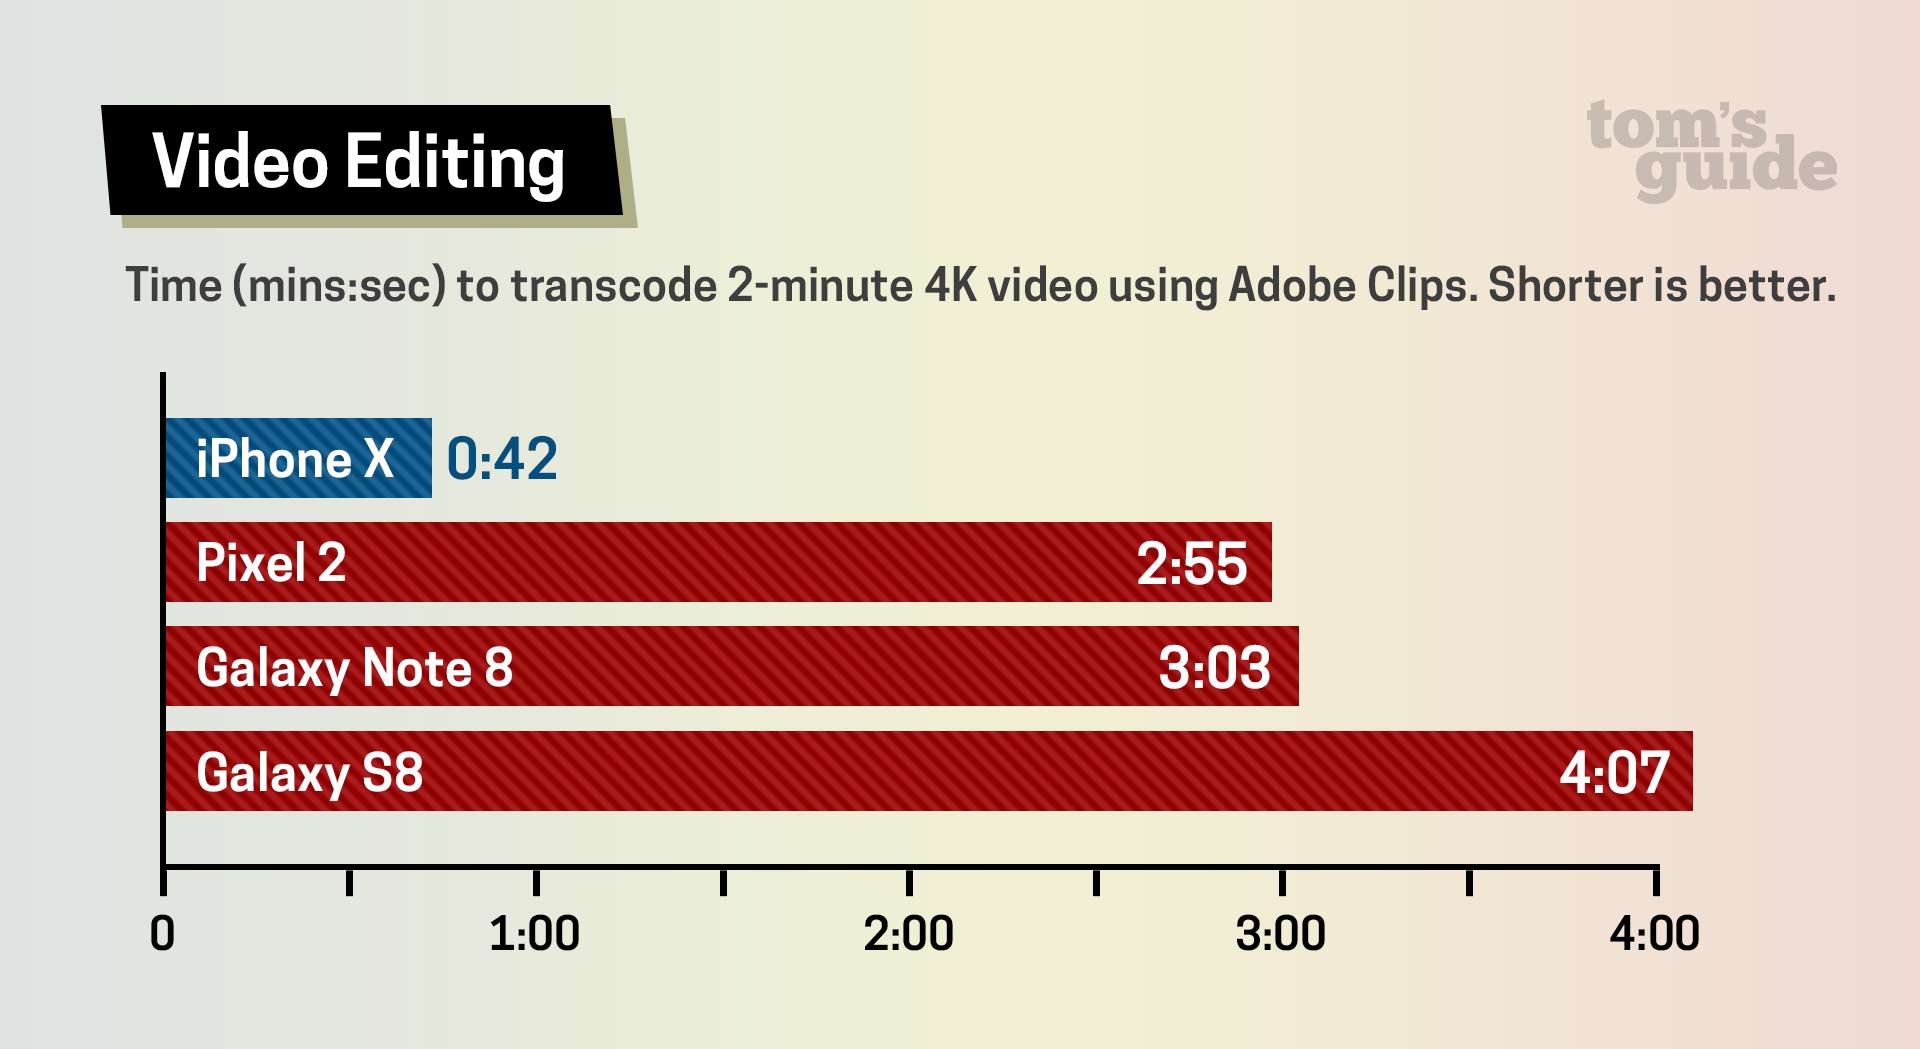 زمان مورد نیاز برای ویرایش یک ویدئوی 2 دقیقه ای با کیفیت 4K